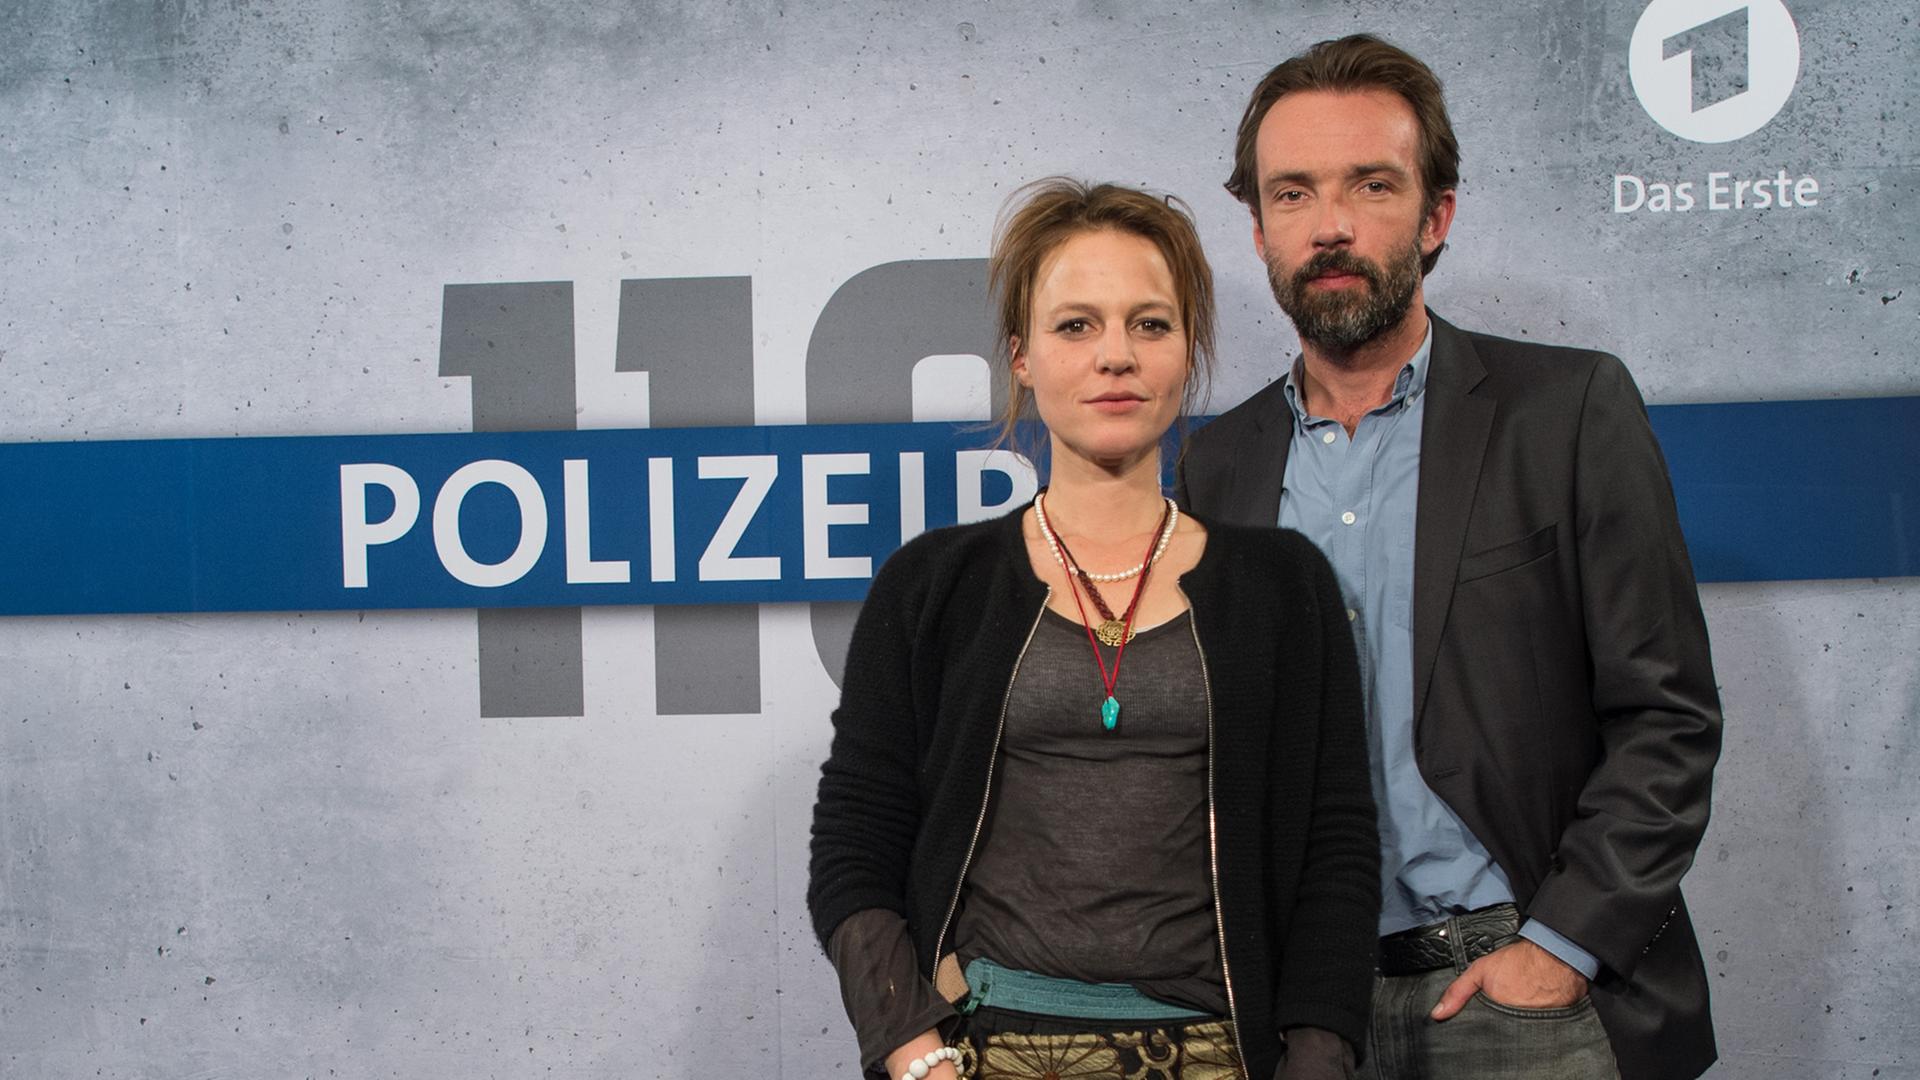 Die beiden Schauspieler Maria Simon als Kriminalhauptkommissarin Olga Lenski und Lucas Gregorowicz als Kriminalhauptkommissar Adam Raczek posieren vor Beginn der Teampremiere vom "Polizeiruf 110: Grenzgänger".